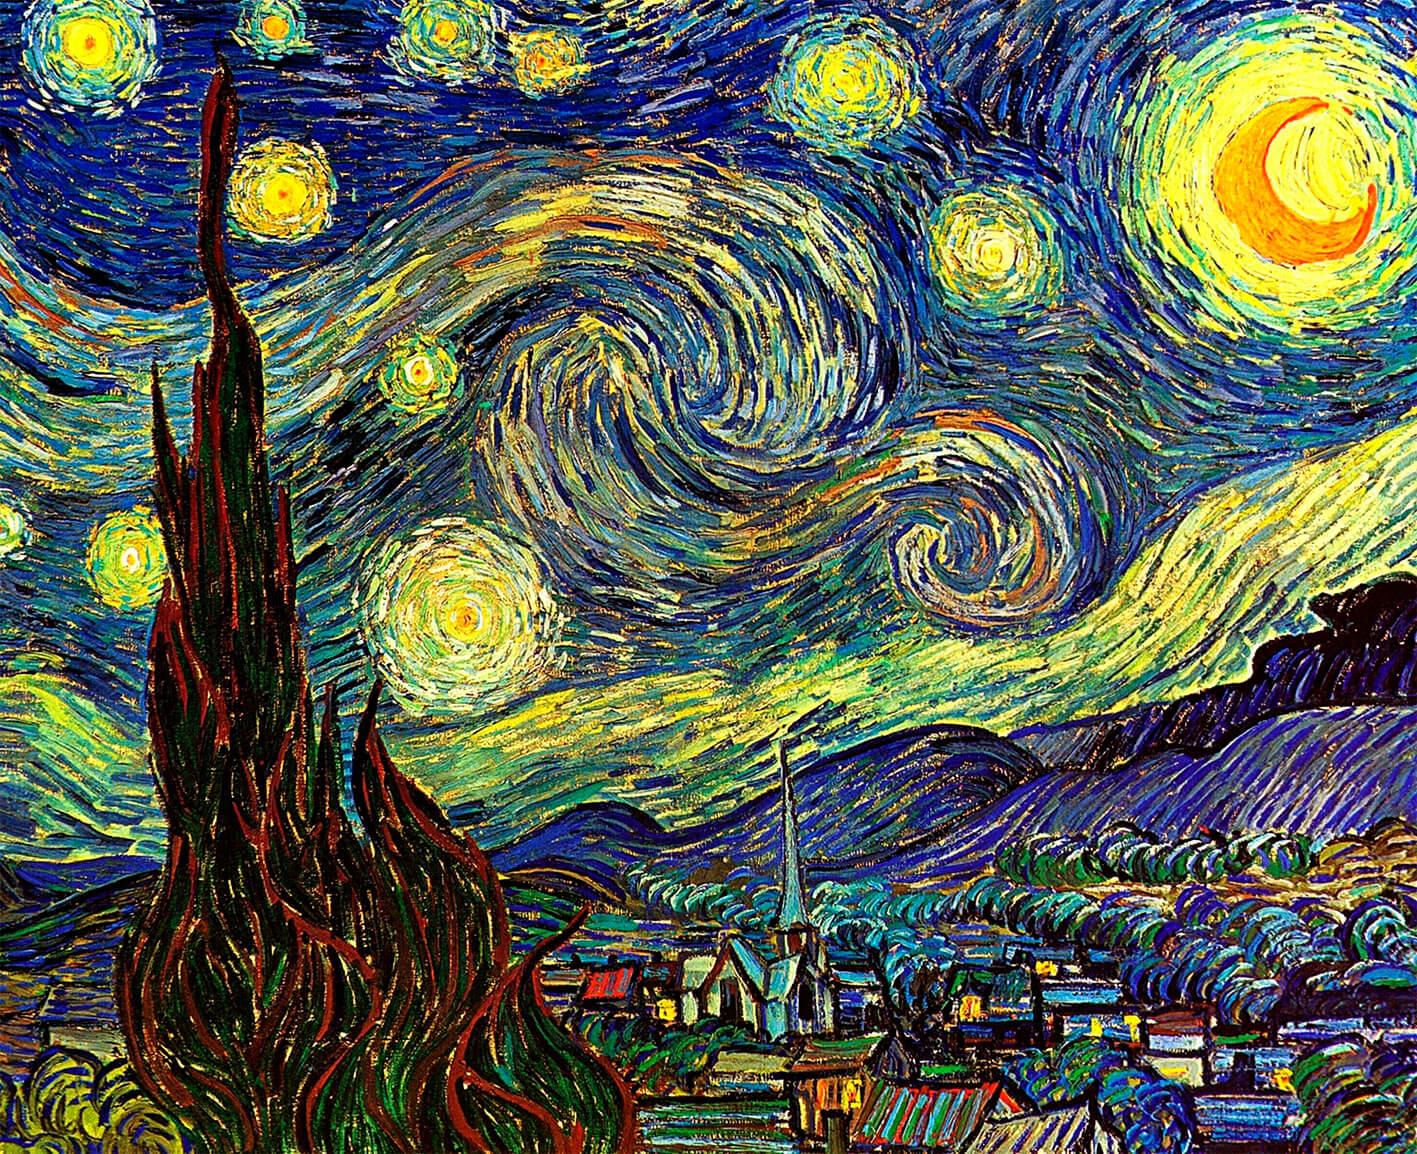 Pilt Van Gogh - Zã si me ɣletiviwo le 3